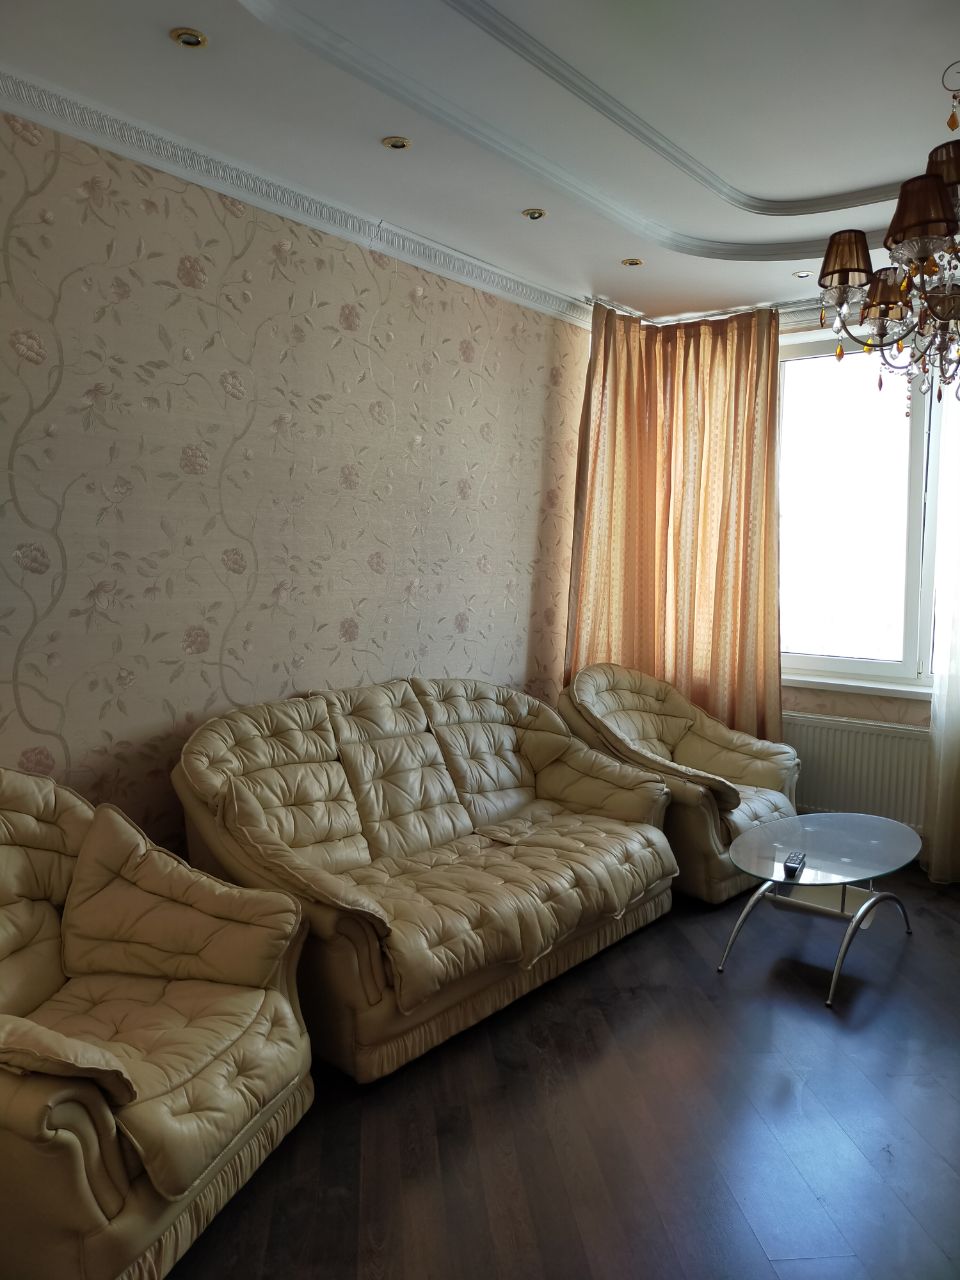 Продам квартиру в Приморском районе - фотография